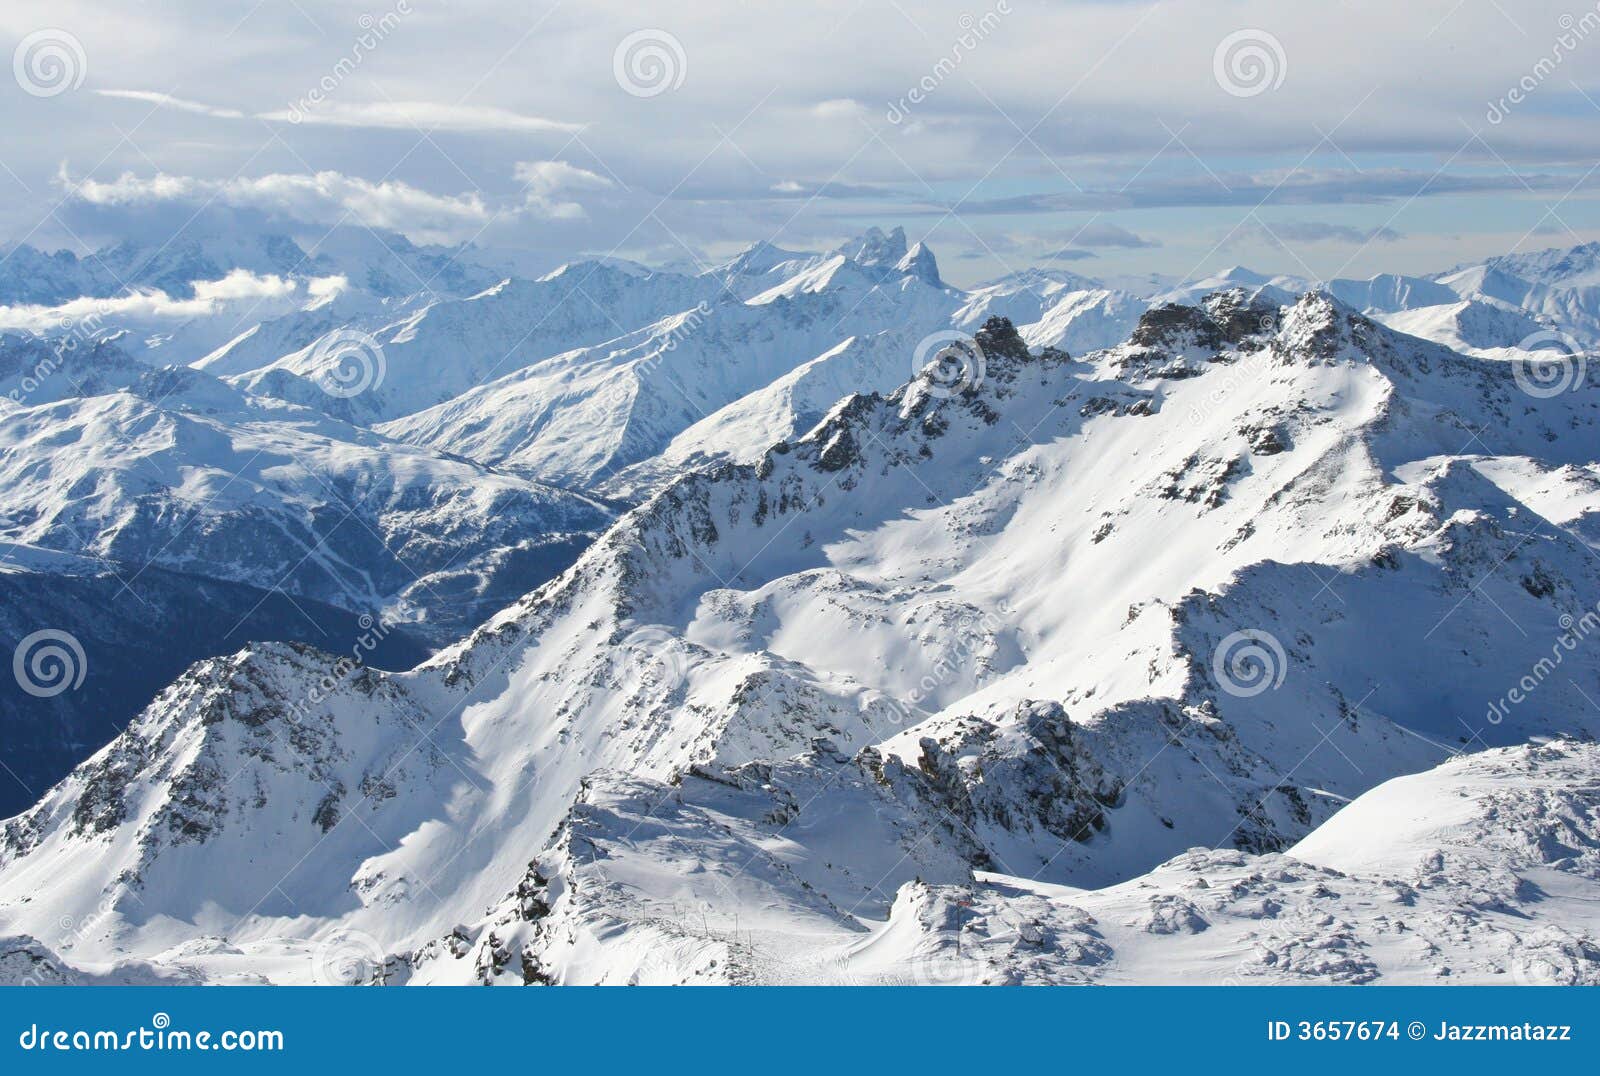 alpes françaises